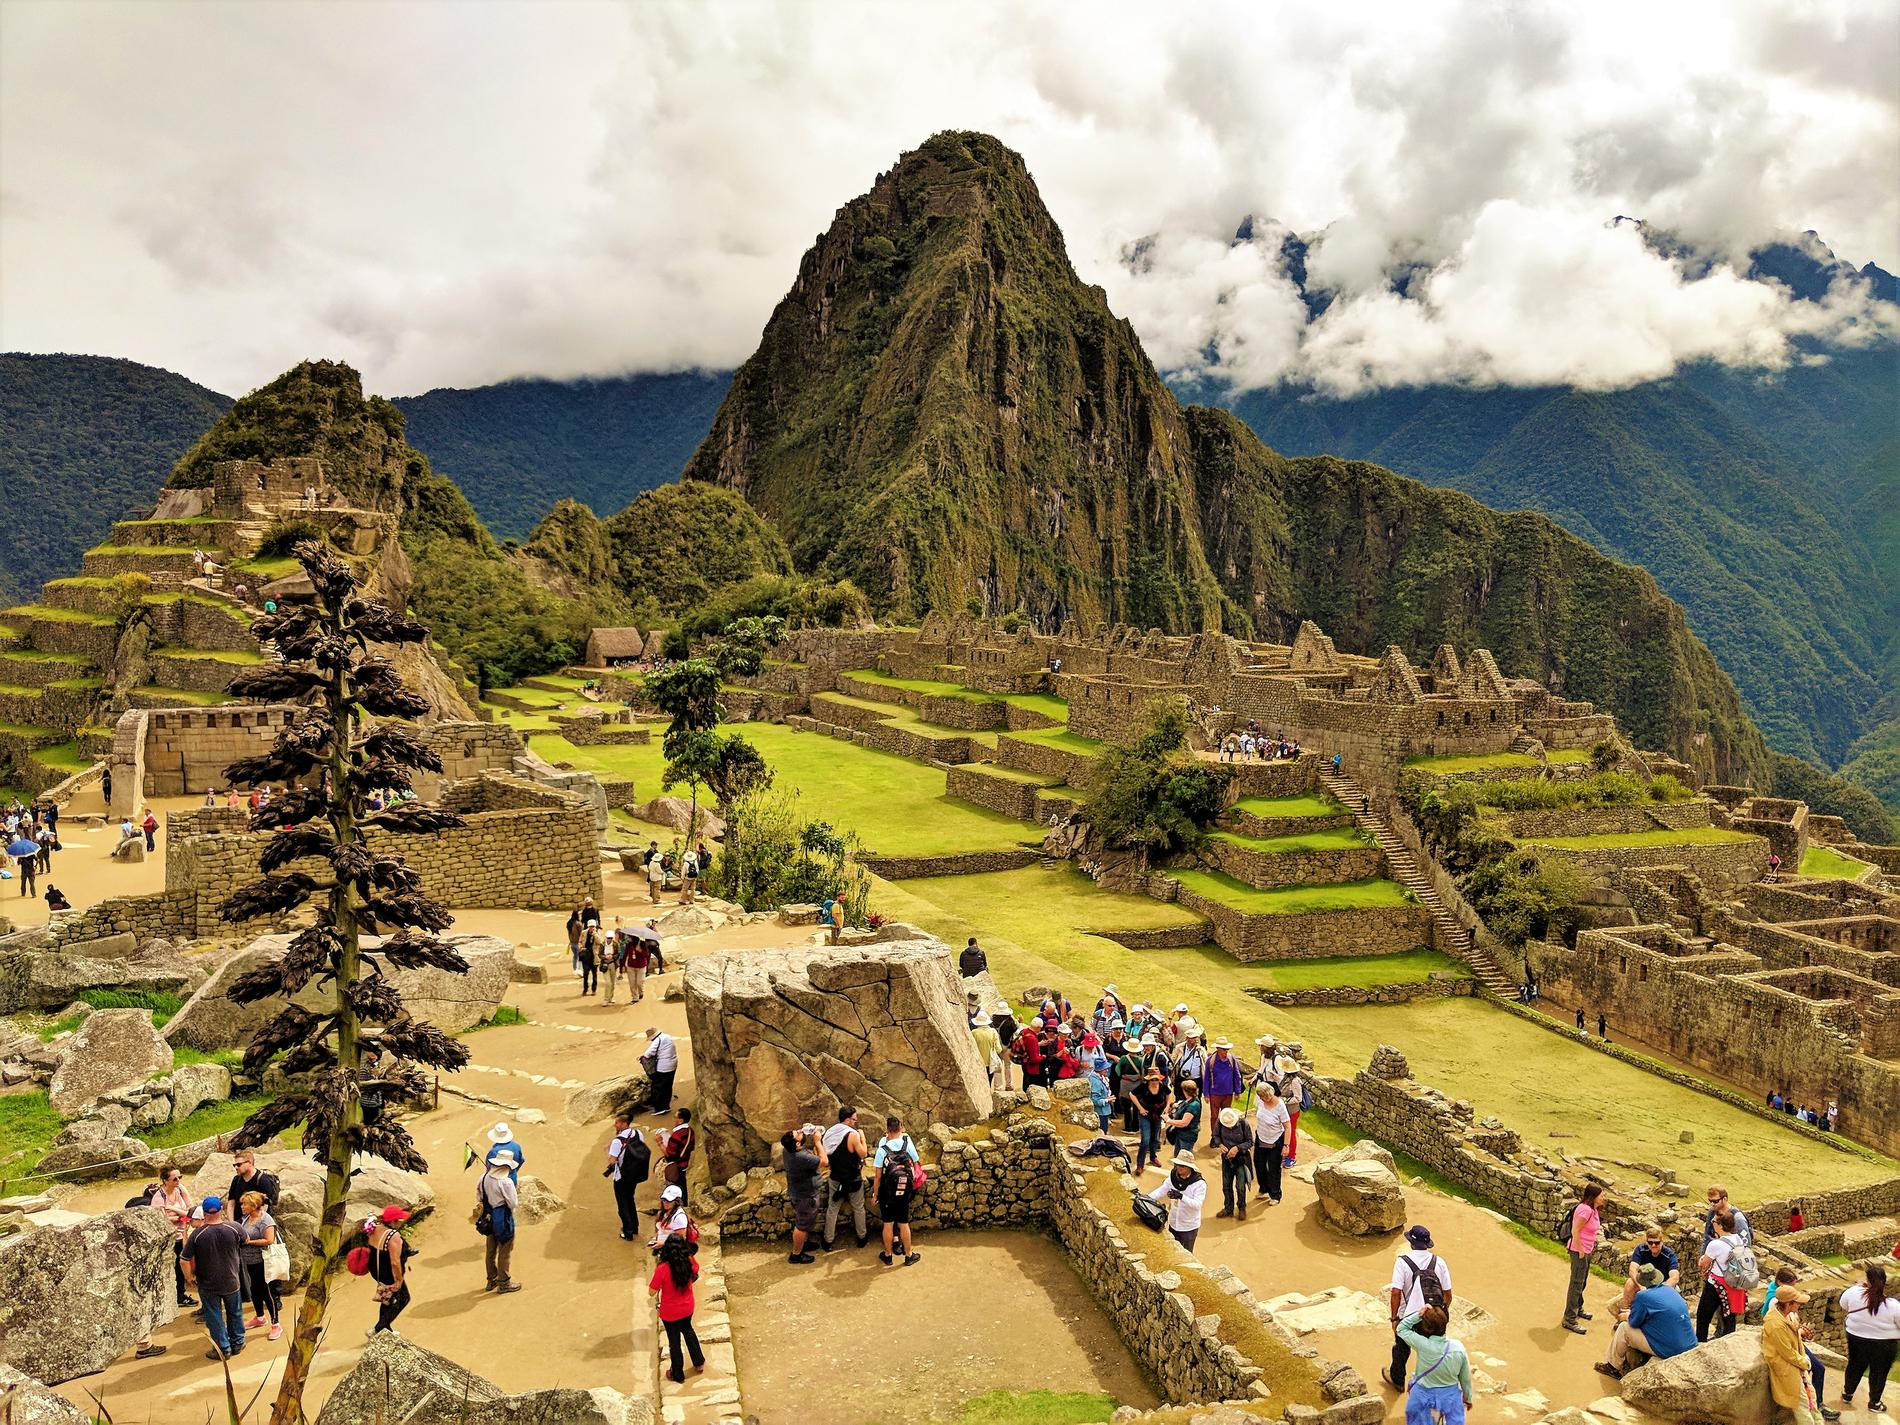 Machu Picchu hotas i dag av överturism. 